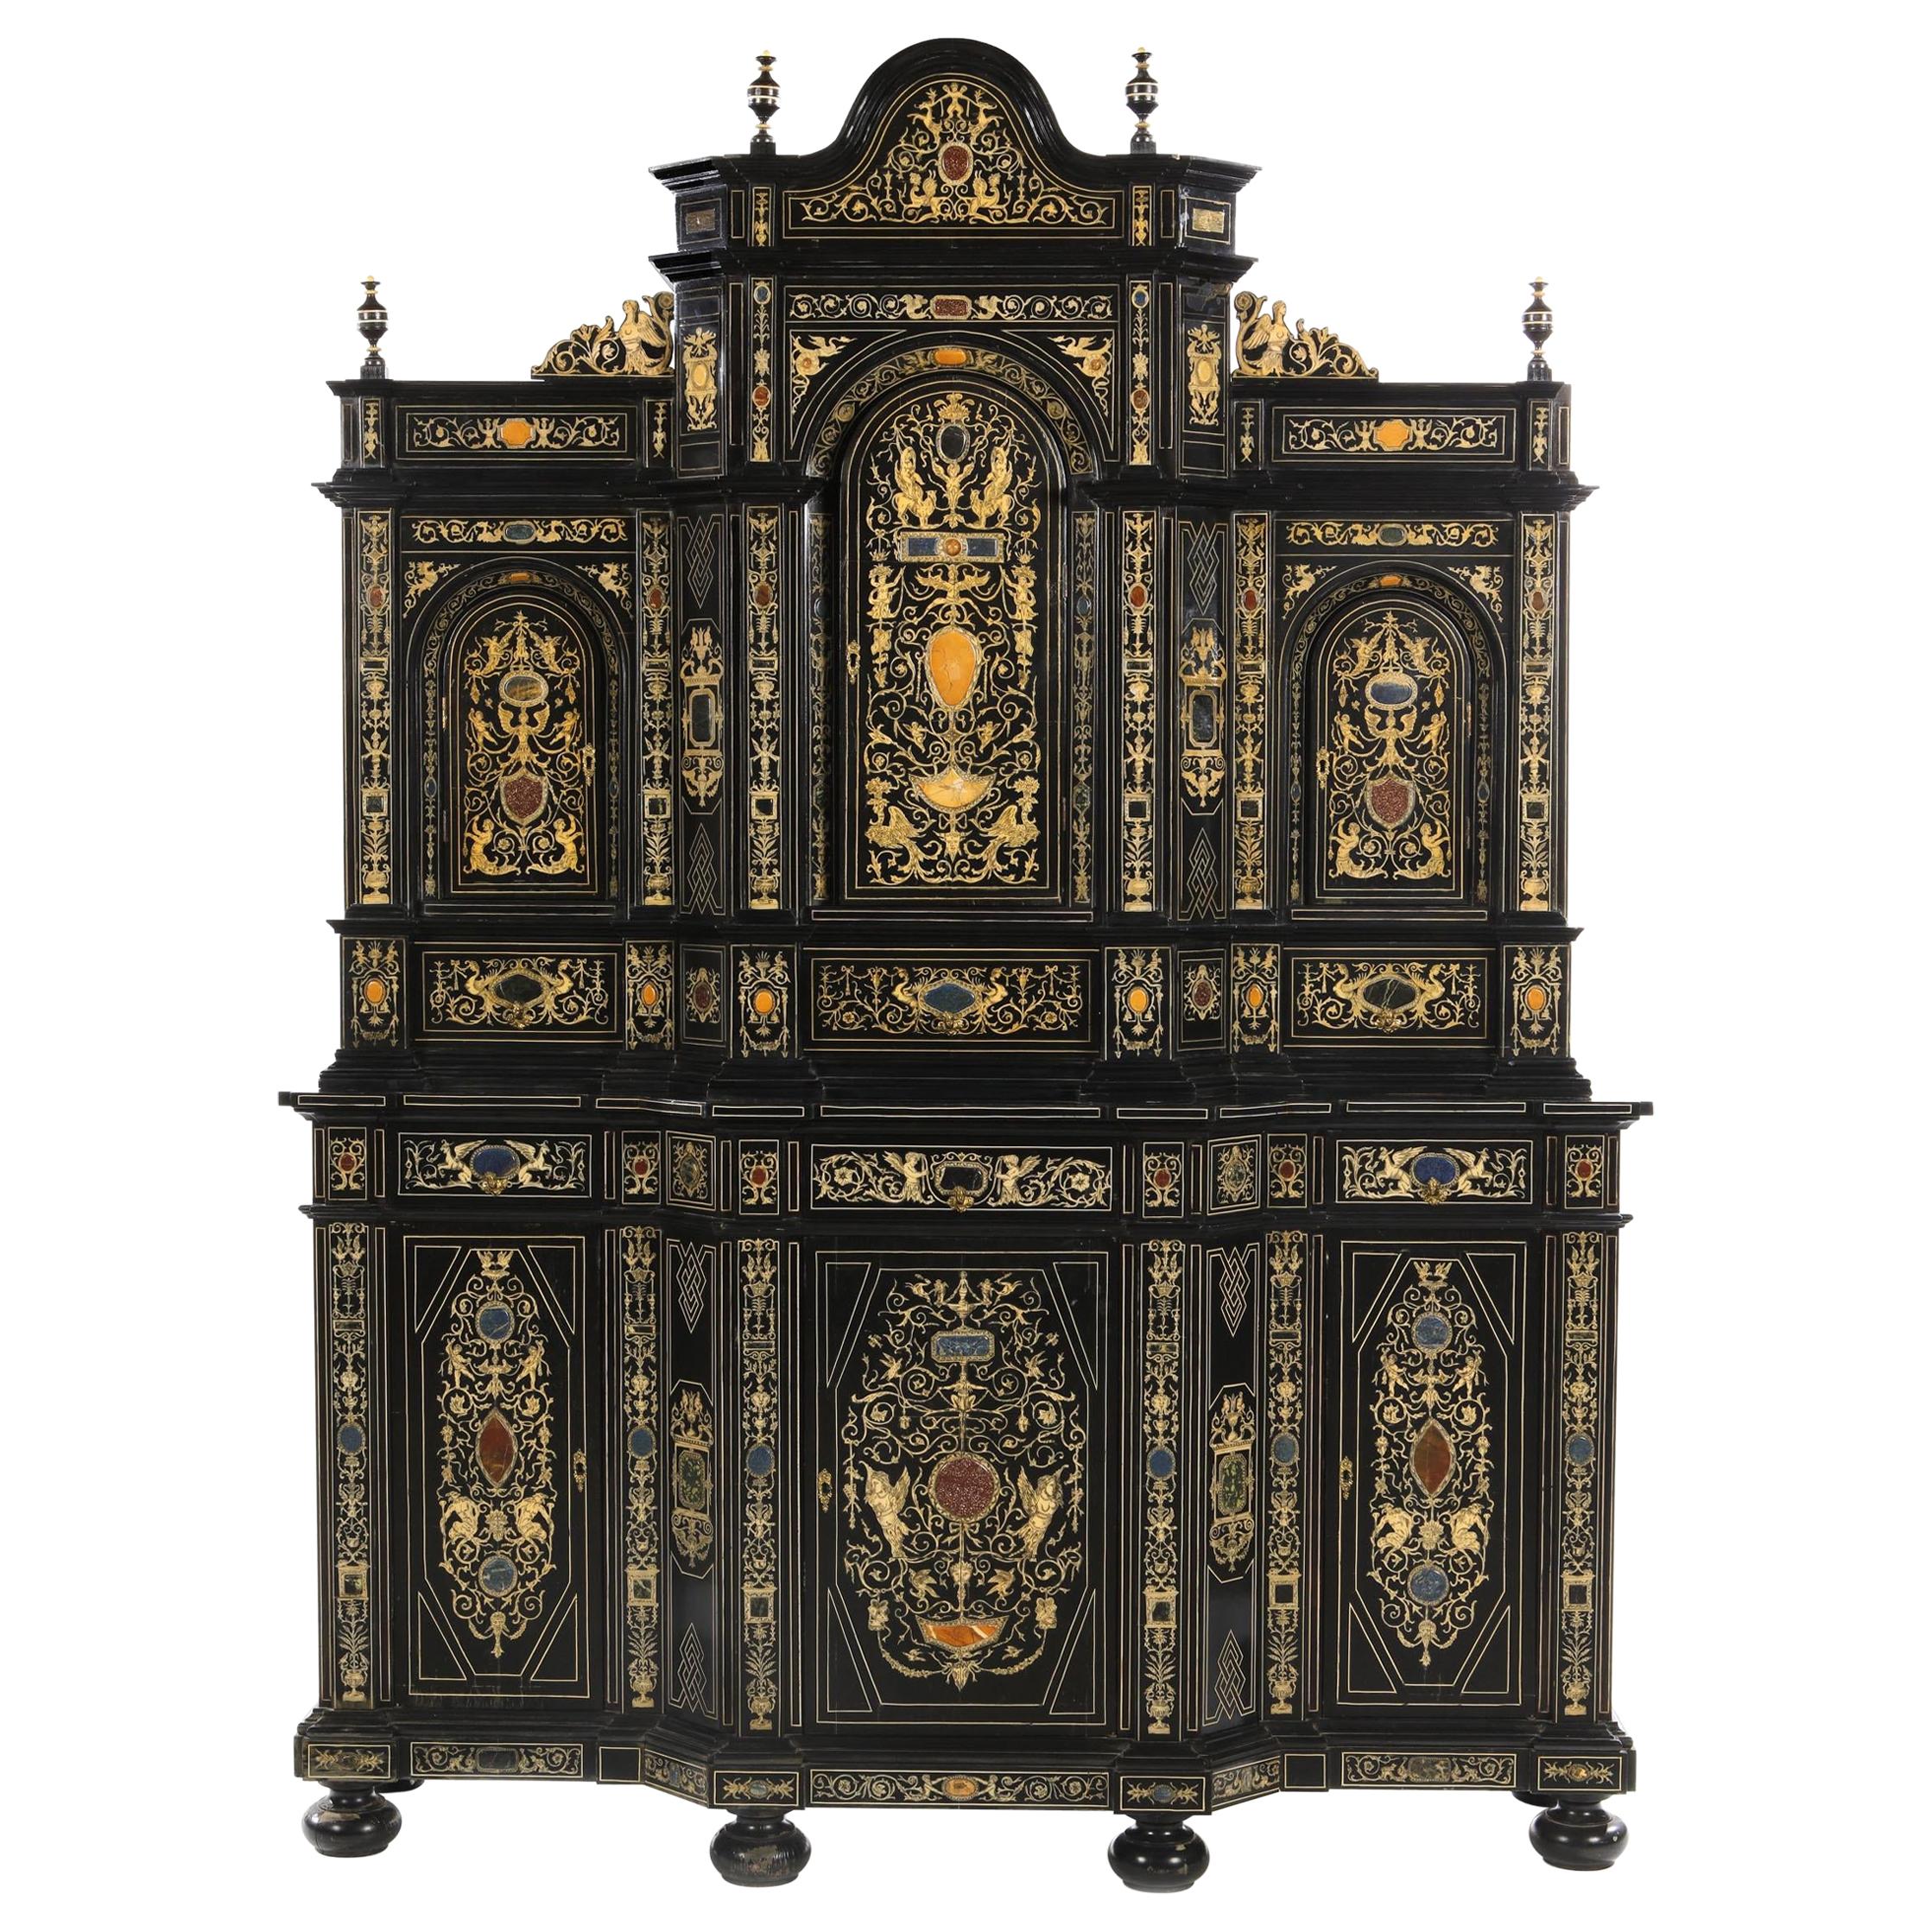 Extremely Fine Italian Baroque Ebonized Wood, Faux Ivory, and Hardstone Cabinet